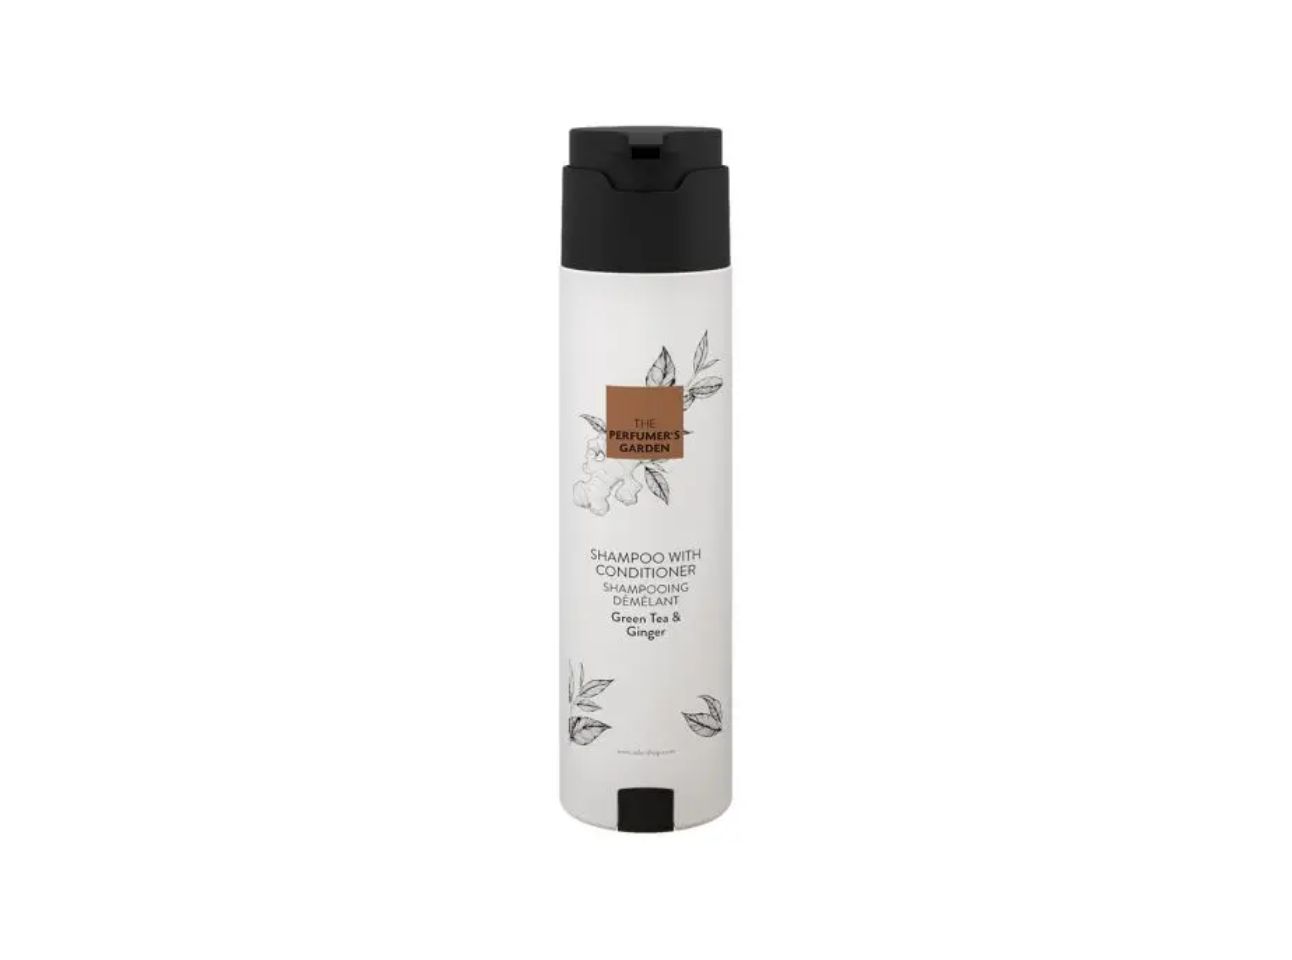 The Perfumers Garden - Shampoo mit Conditioner, SHAPE-Spender, 300 ml